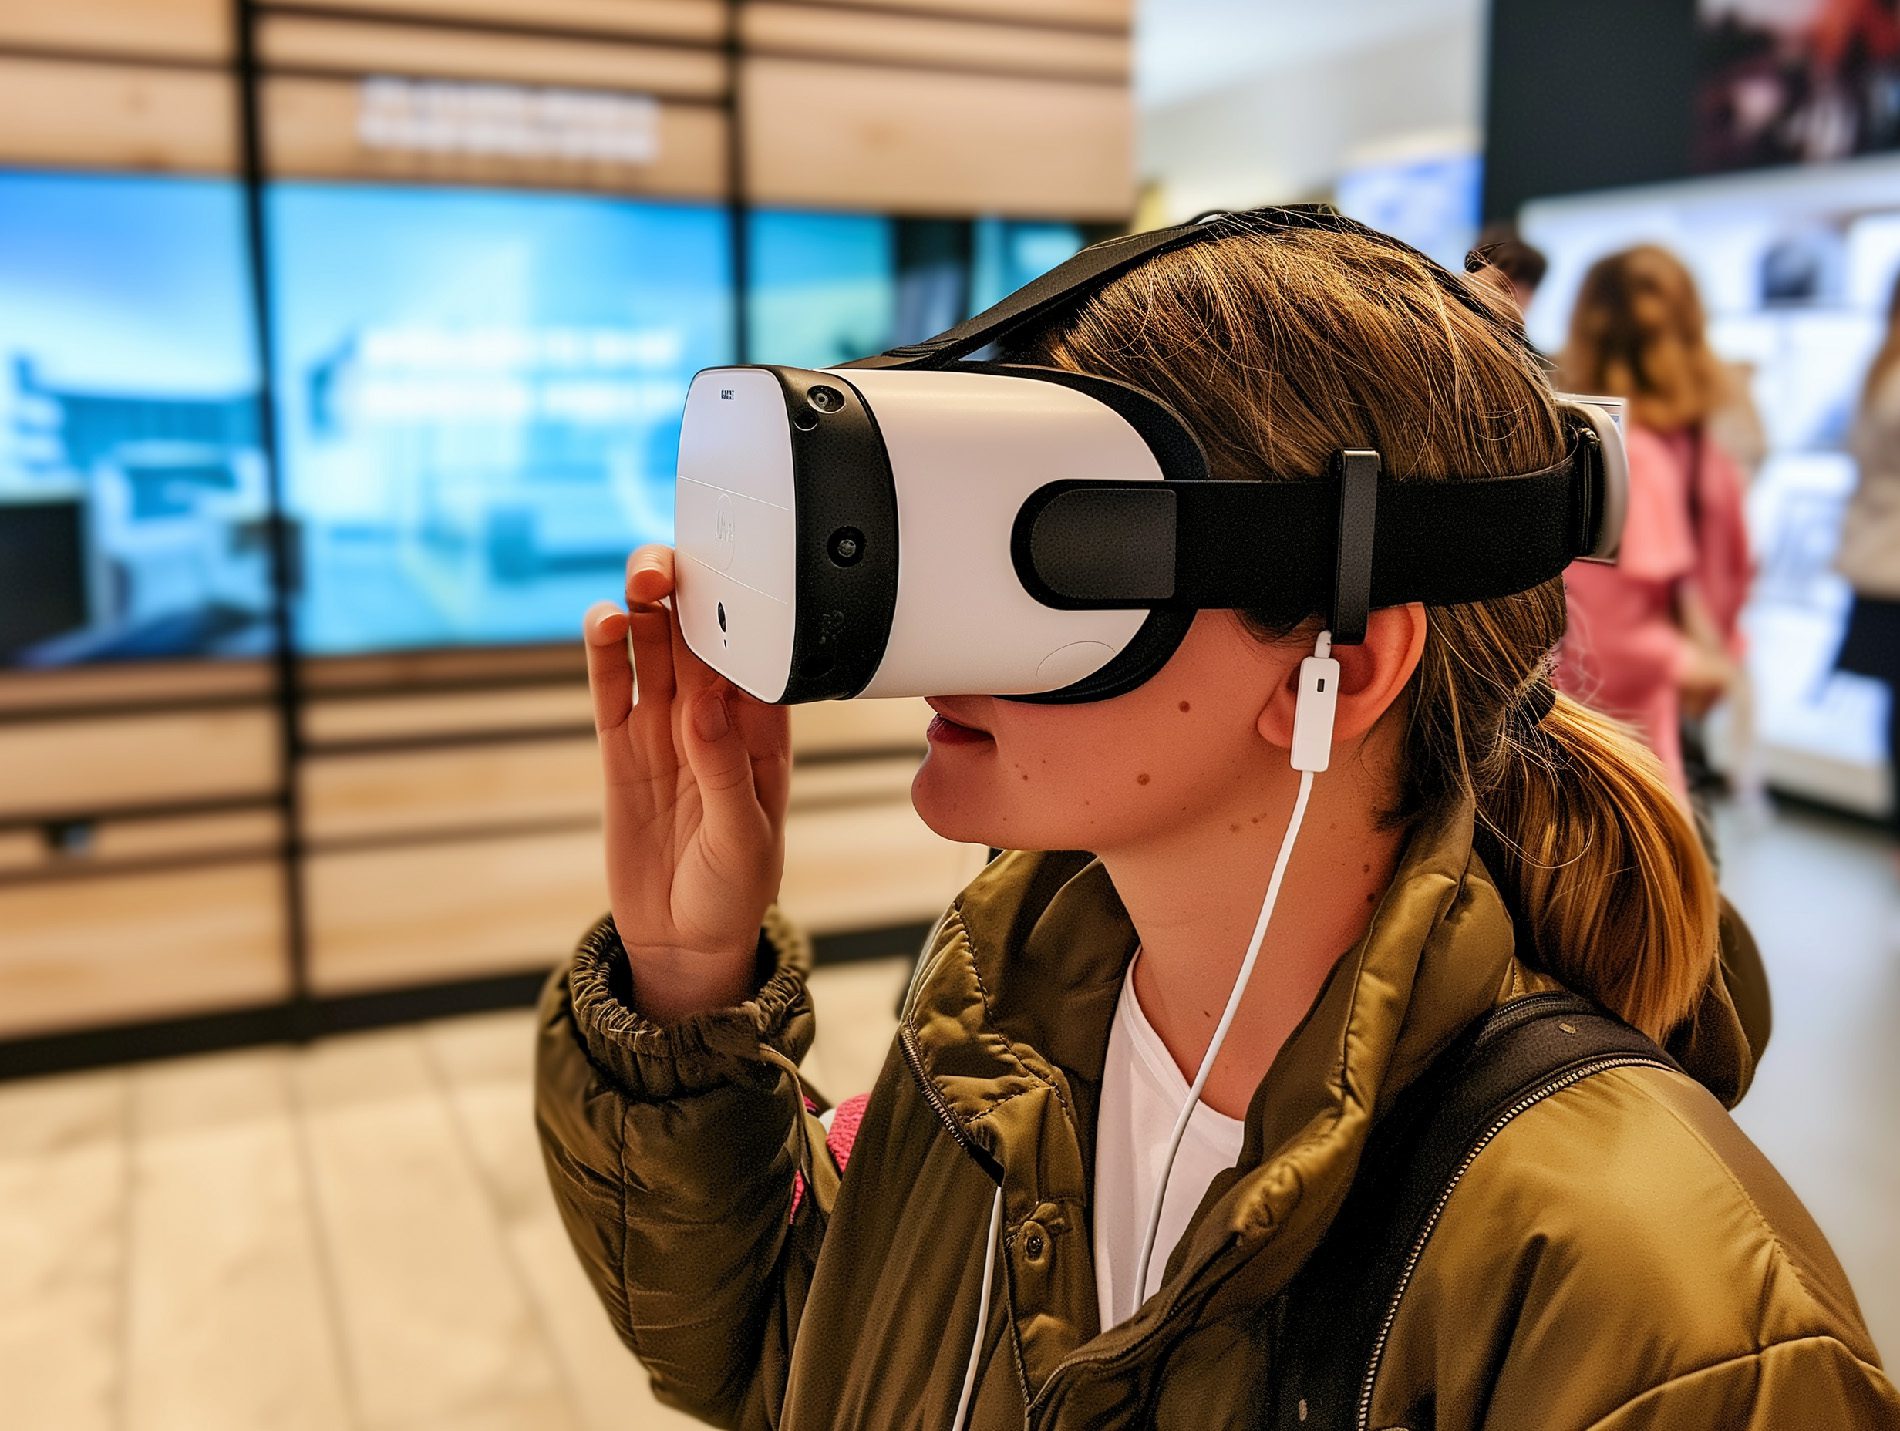 Noch sind die Virtual-Reality-Brillen zu groß, um sie im Alltag zu nutzen, aber das dürfte nur eine Frage der Zeit sind, um gelöst zu werden.